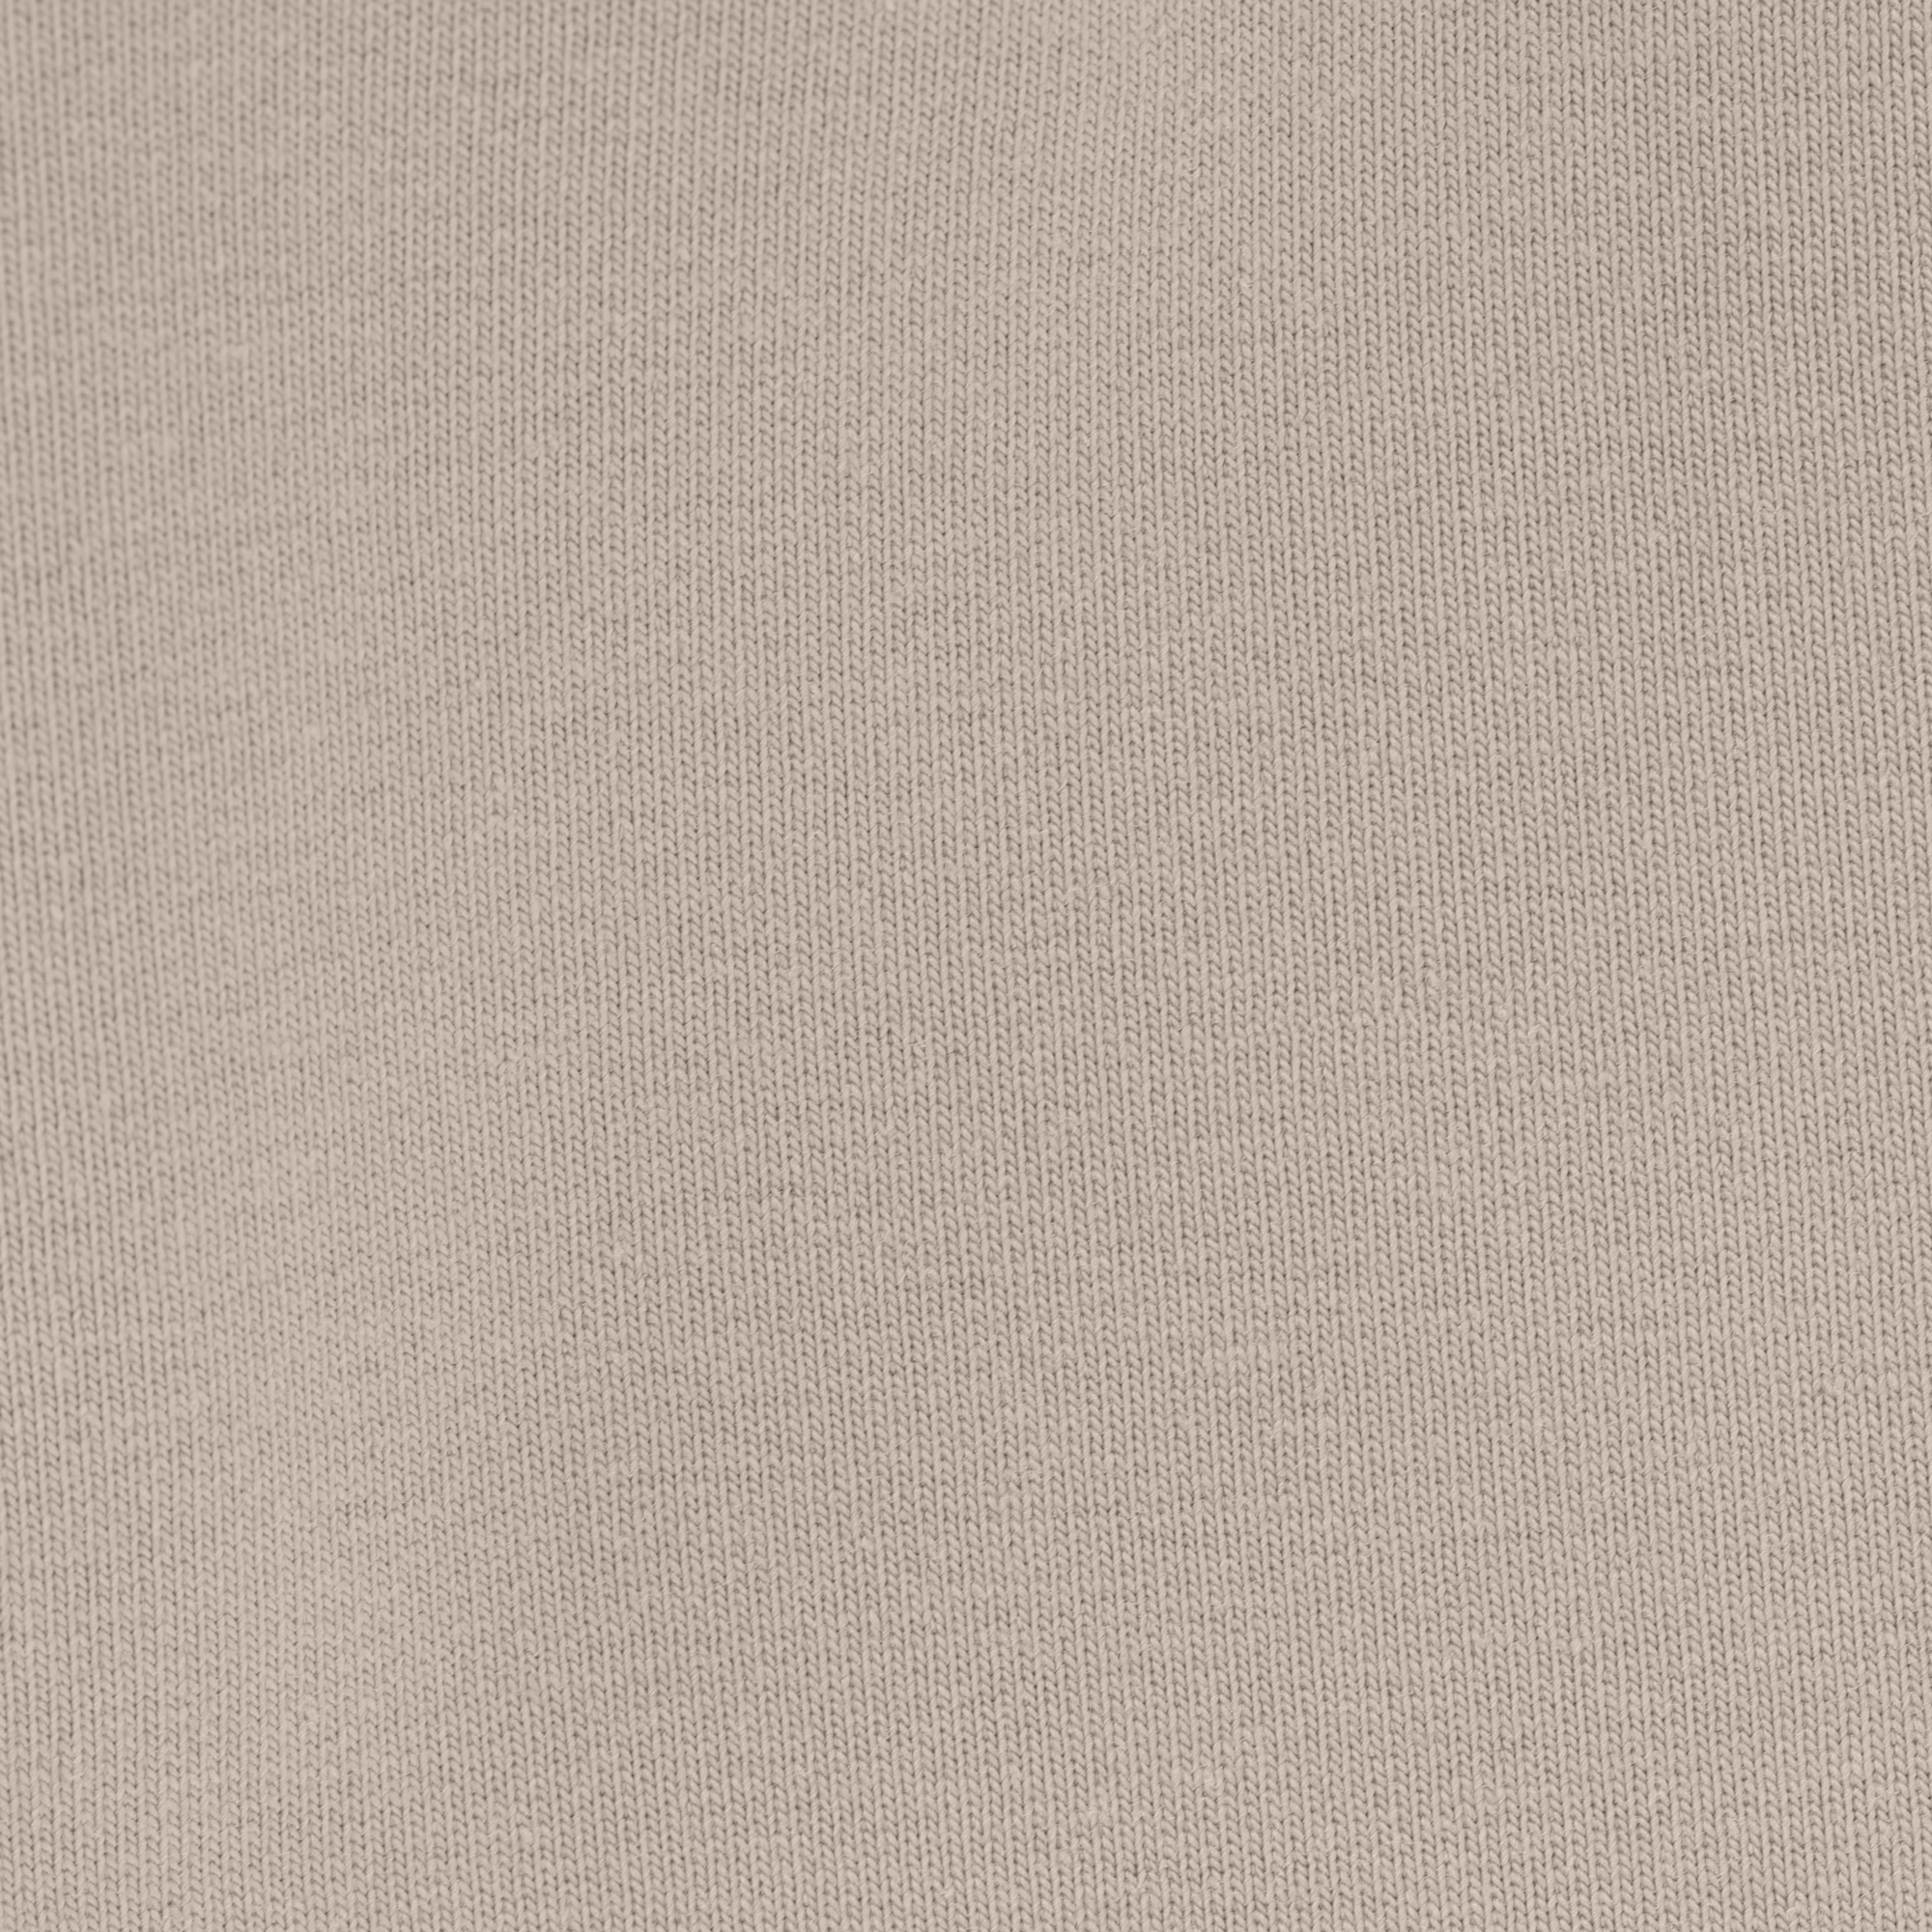 Женская толстовка Birlik светло-бежевая с капюшоном, цвет светло-бежевый, размер XXL - фото 2